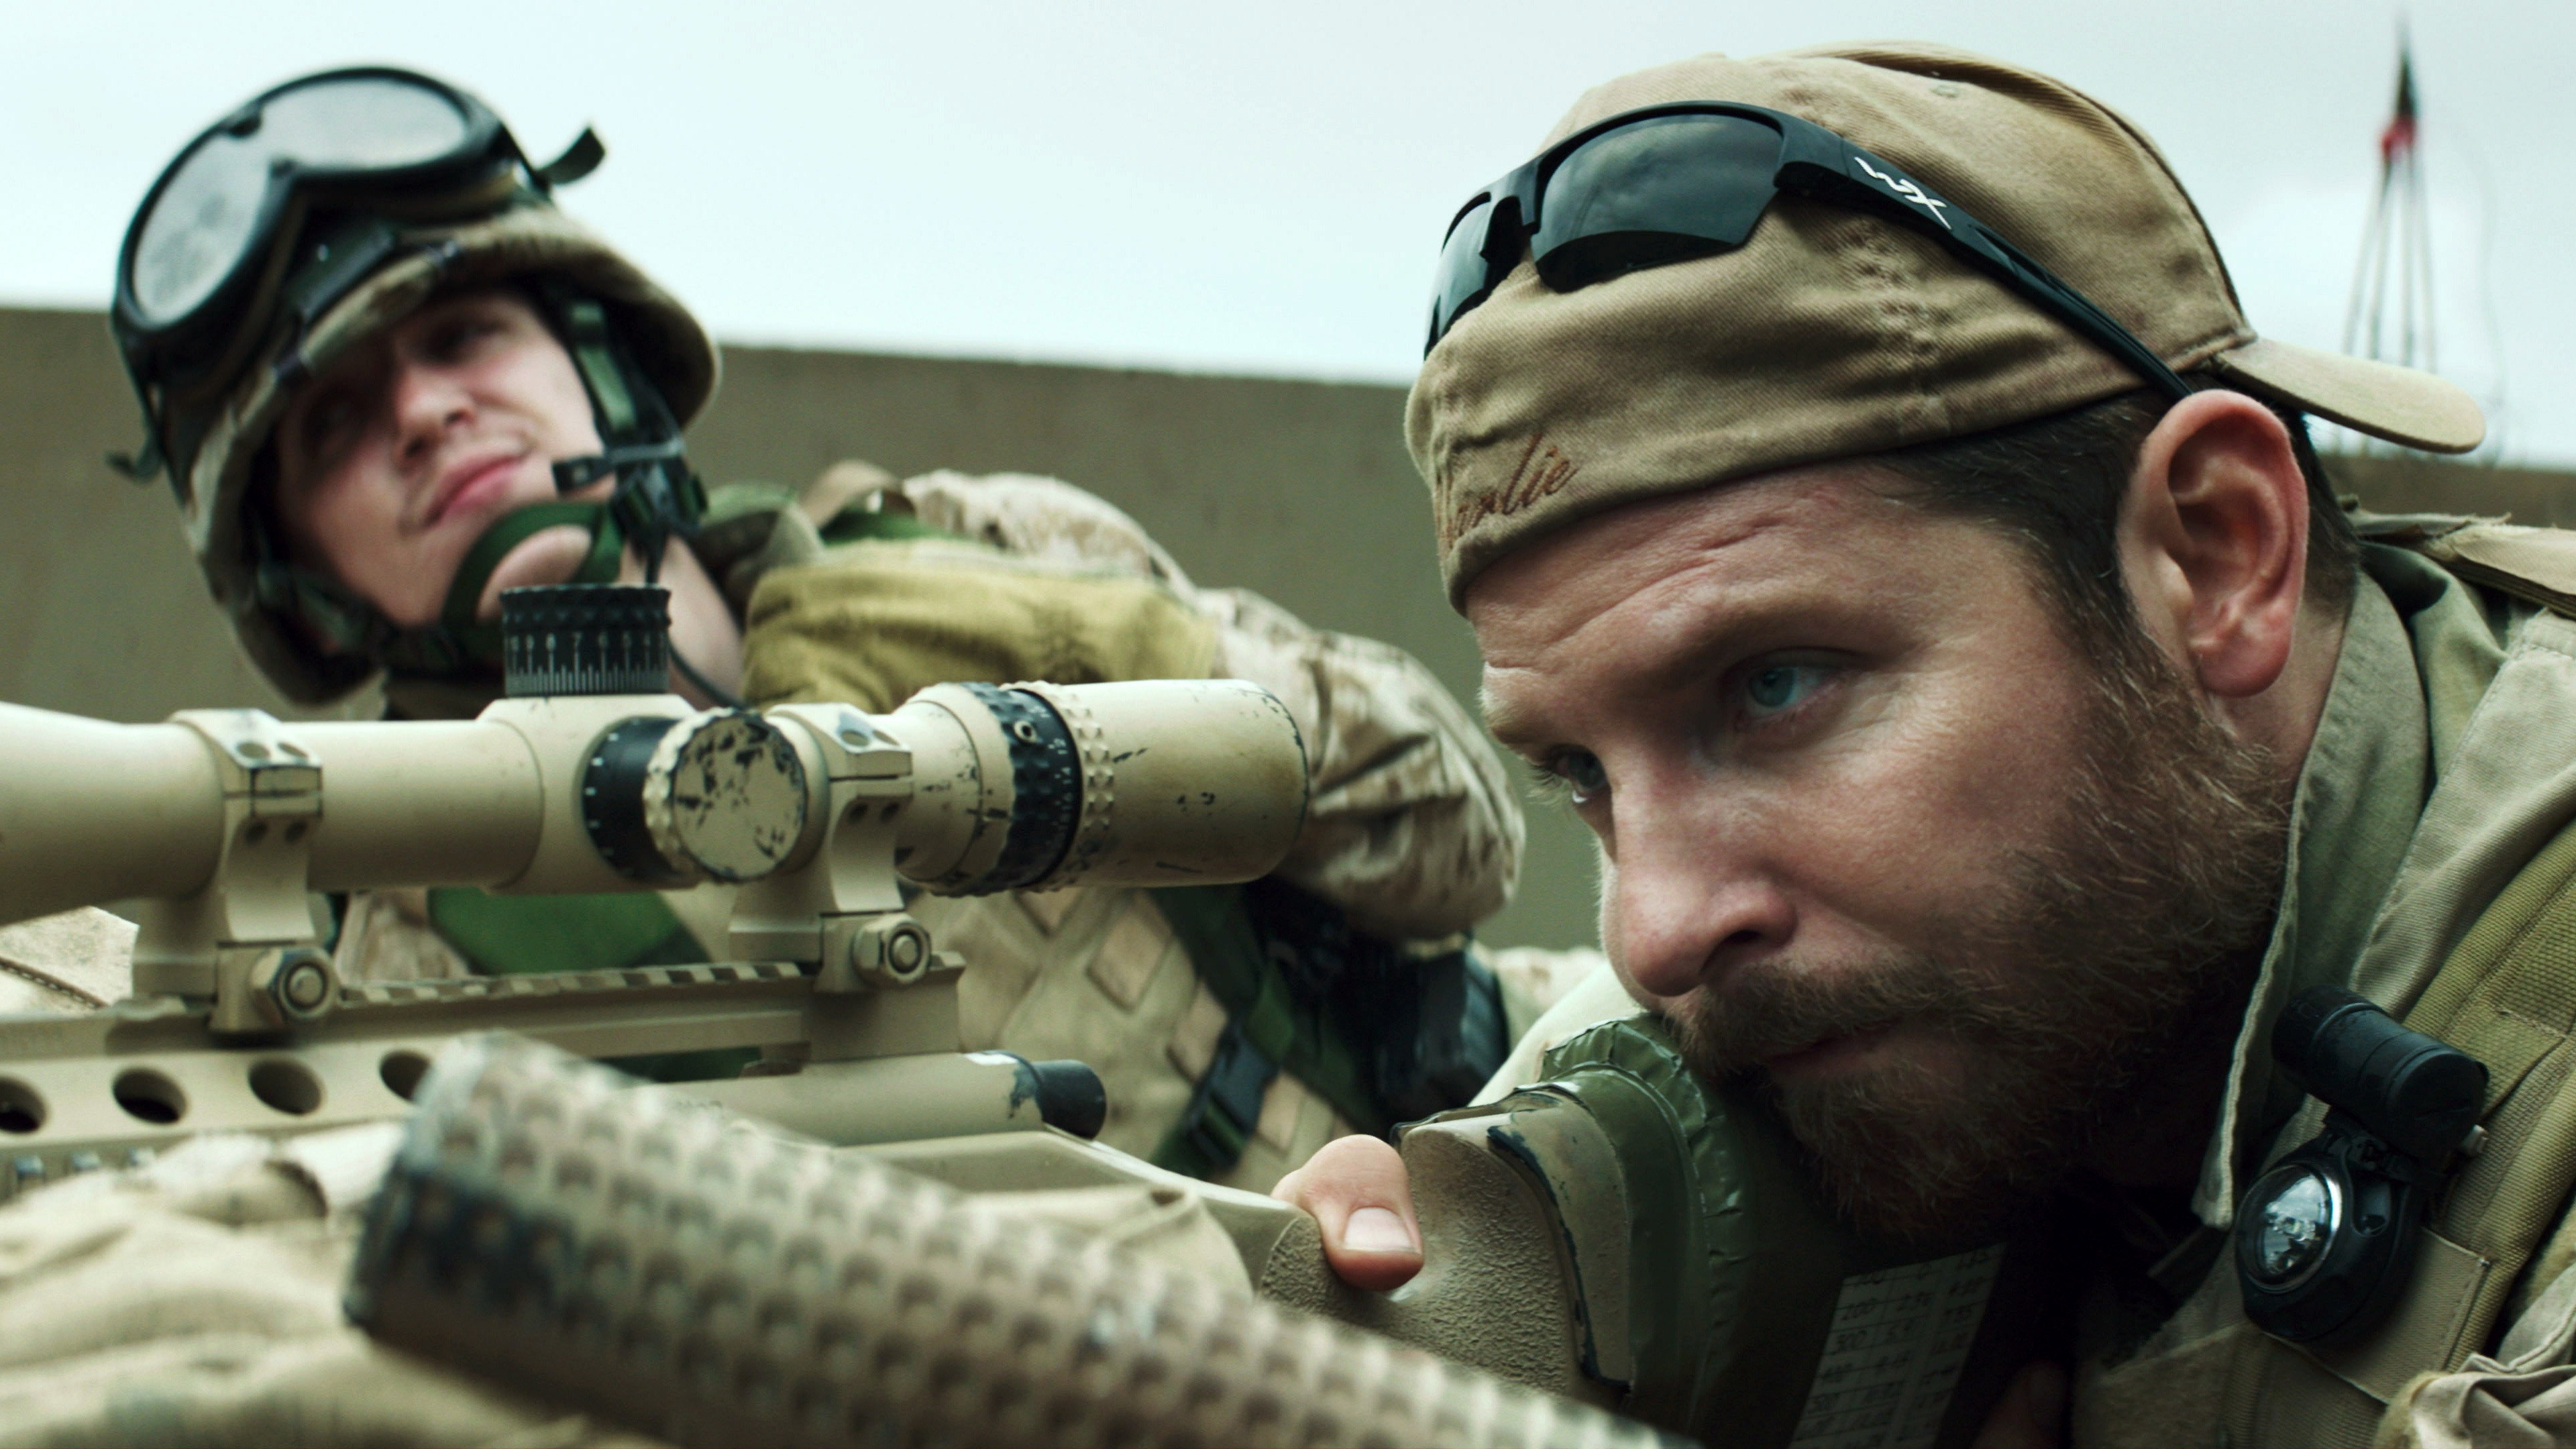 American Sniper Movie Scene for 3840 x 2160 Ultra HD resolution